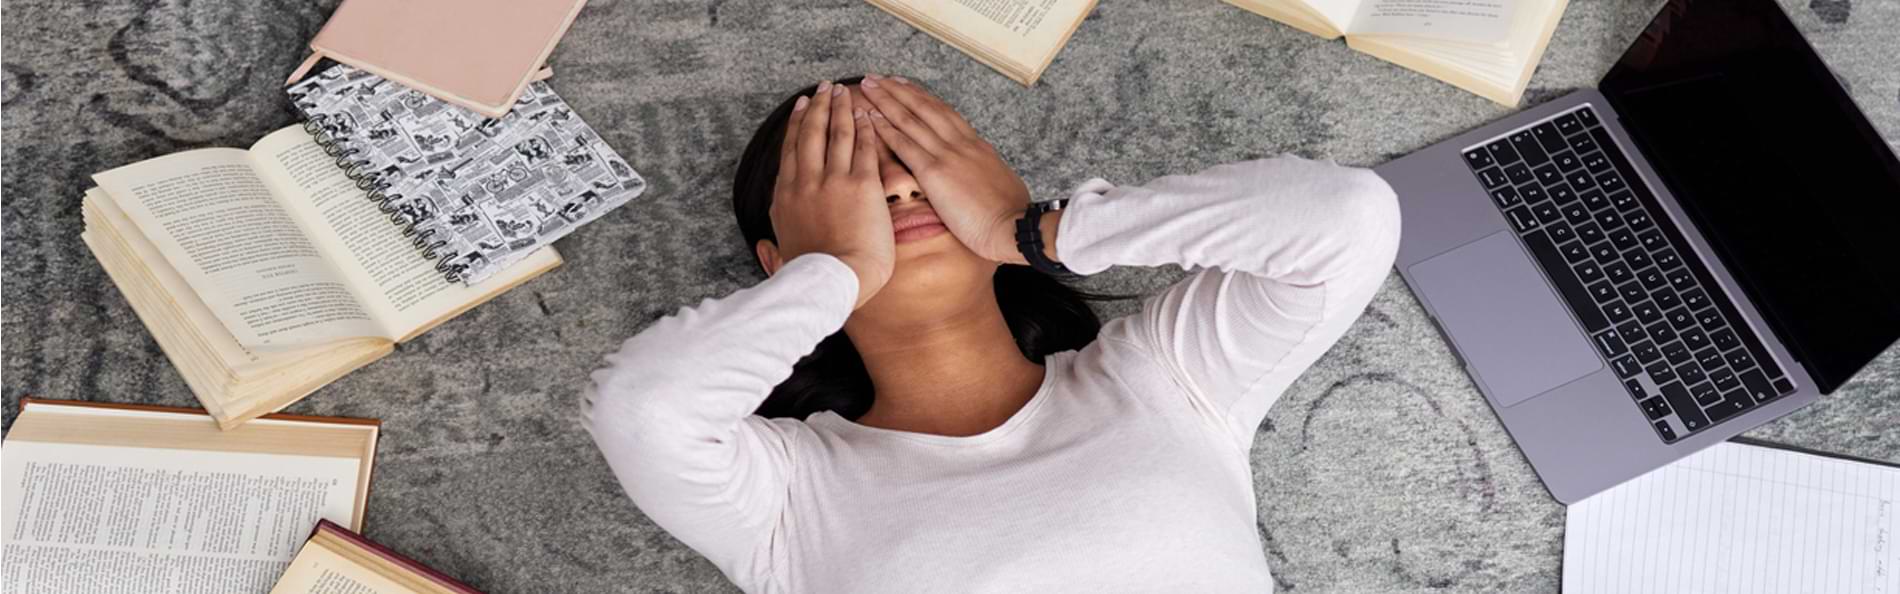 Eine junge Frau liegt erschöpft zwischen Büchern, einem Laptop und einem Smartphone auf einem Teppich